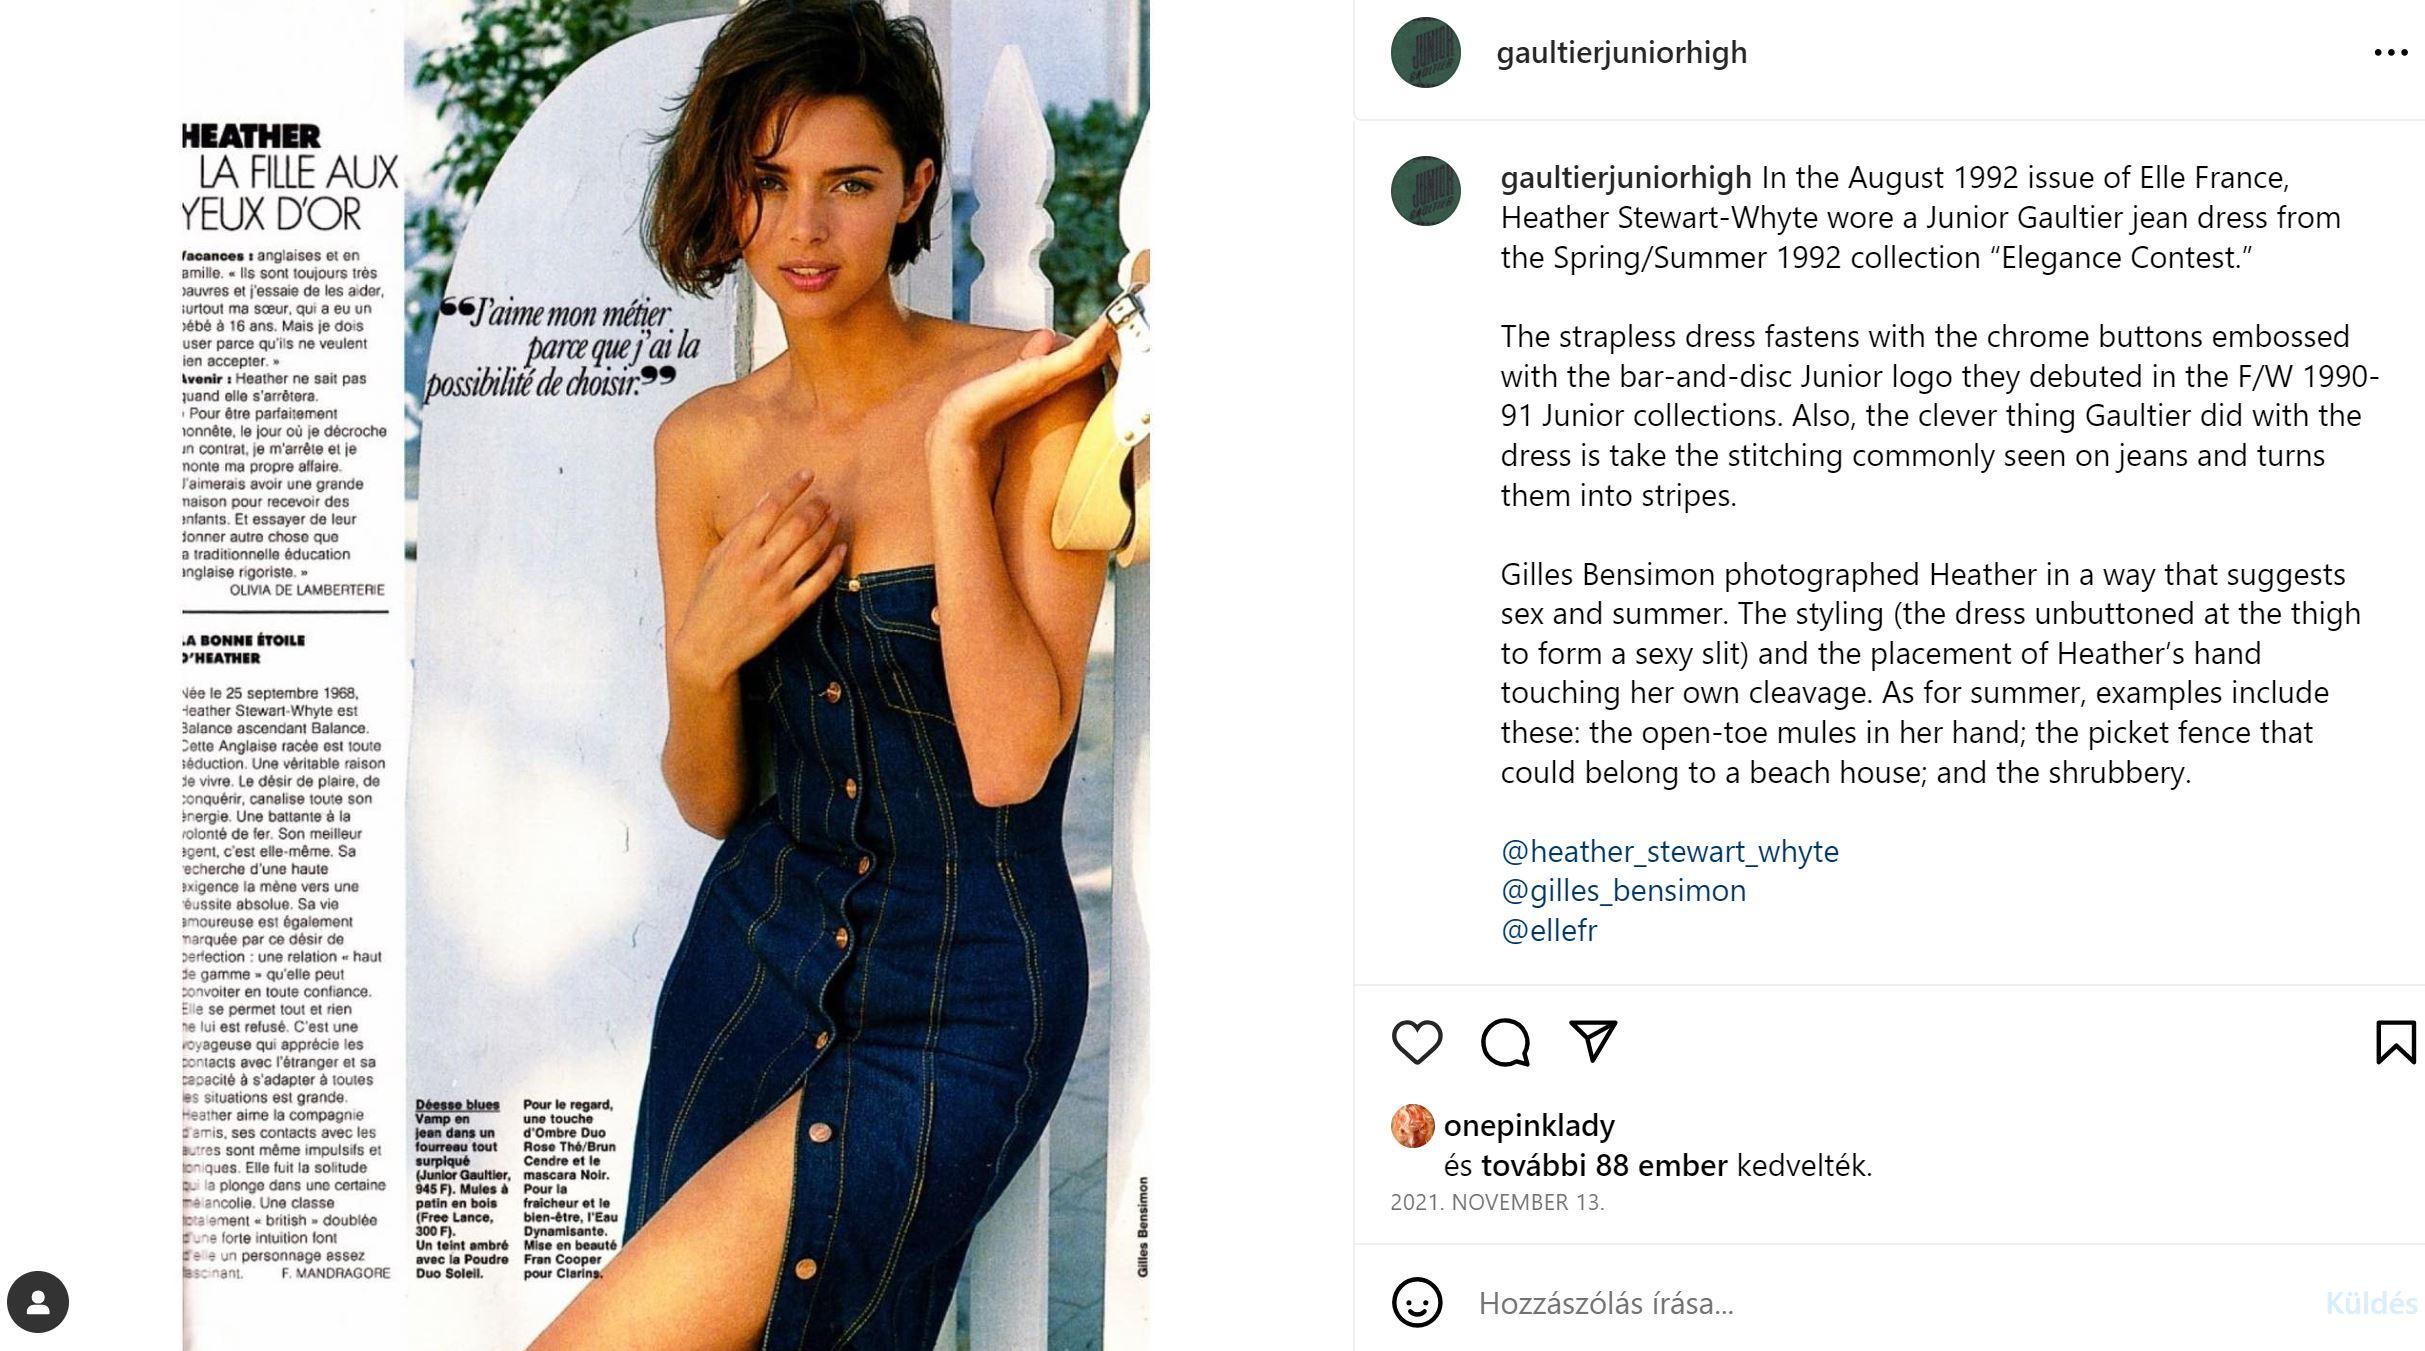 Dans le numéro d'août 1992 de Elle France, Heather Whiting portait une robe en jean Junior Gaultier de la collection printemps/été 1992 